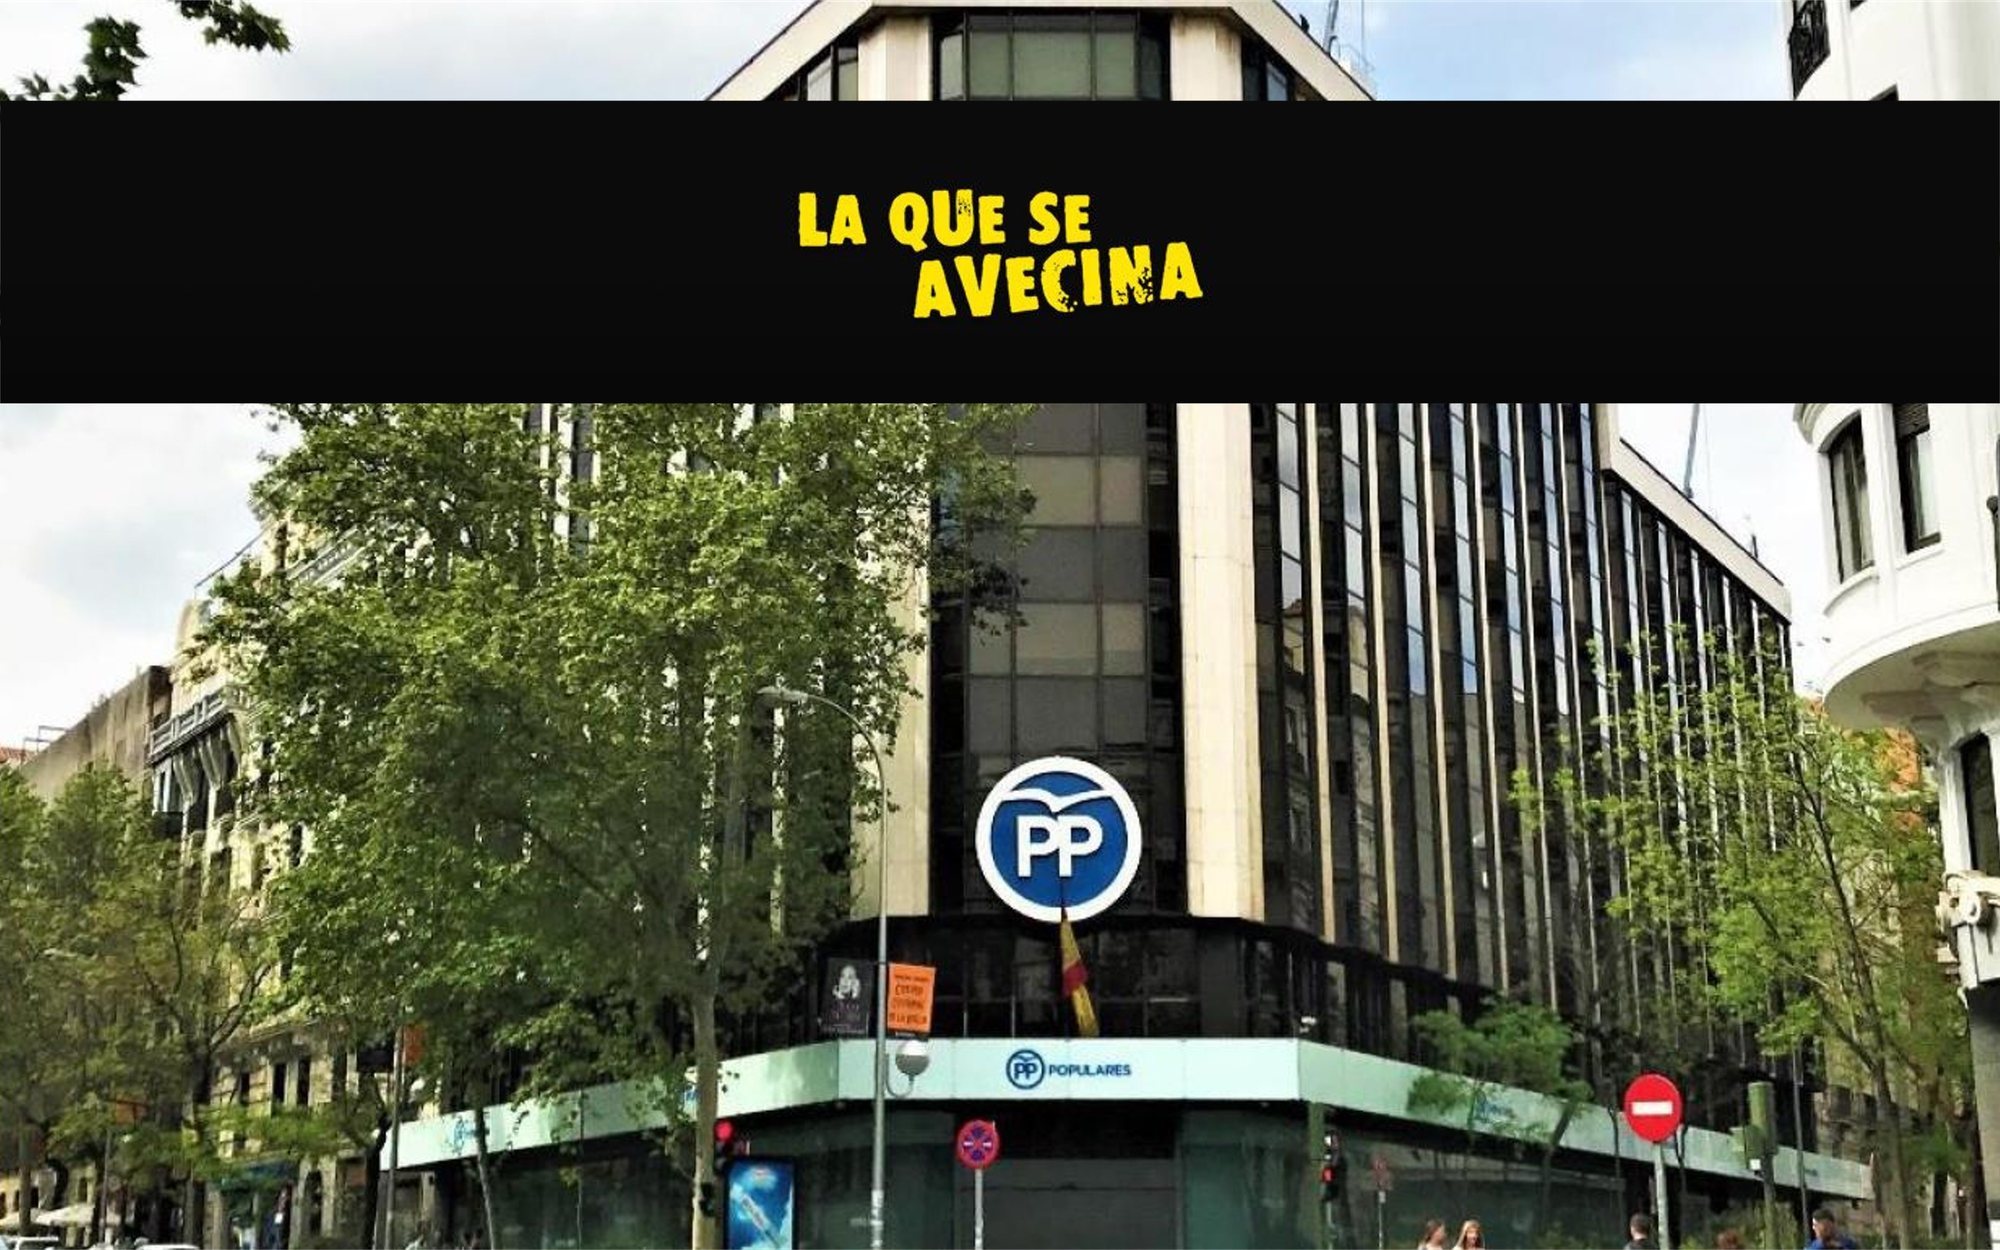 Alberto Caballero propone la sede del PP como el nuevo vecindario de 'La que se avecina'